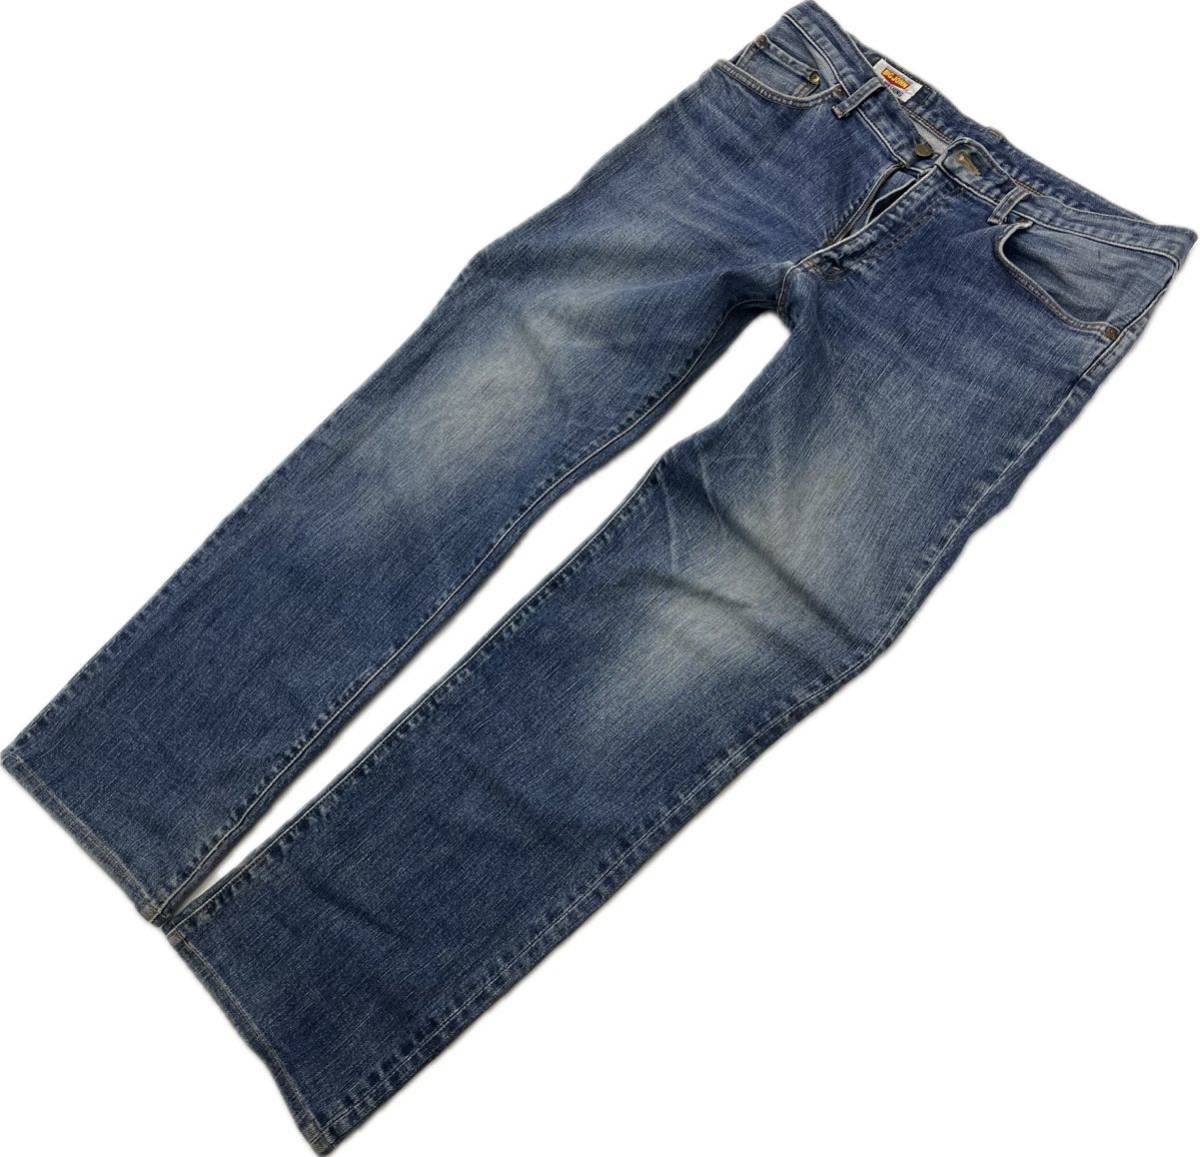 BIG JOHN * атмосфера есть цвет ..* Denim брюки индиго джинсы W35 American Casual Street б/у одежда популярный Old Big John #Ja6823